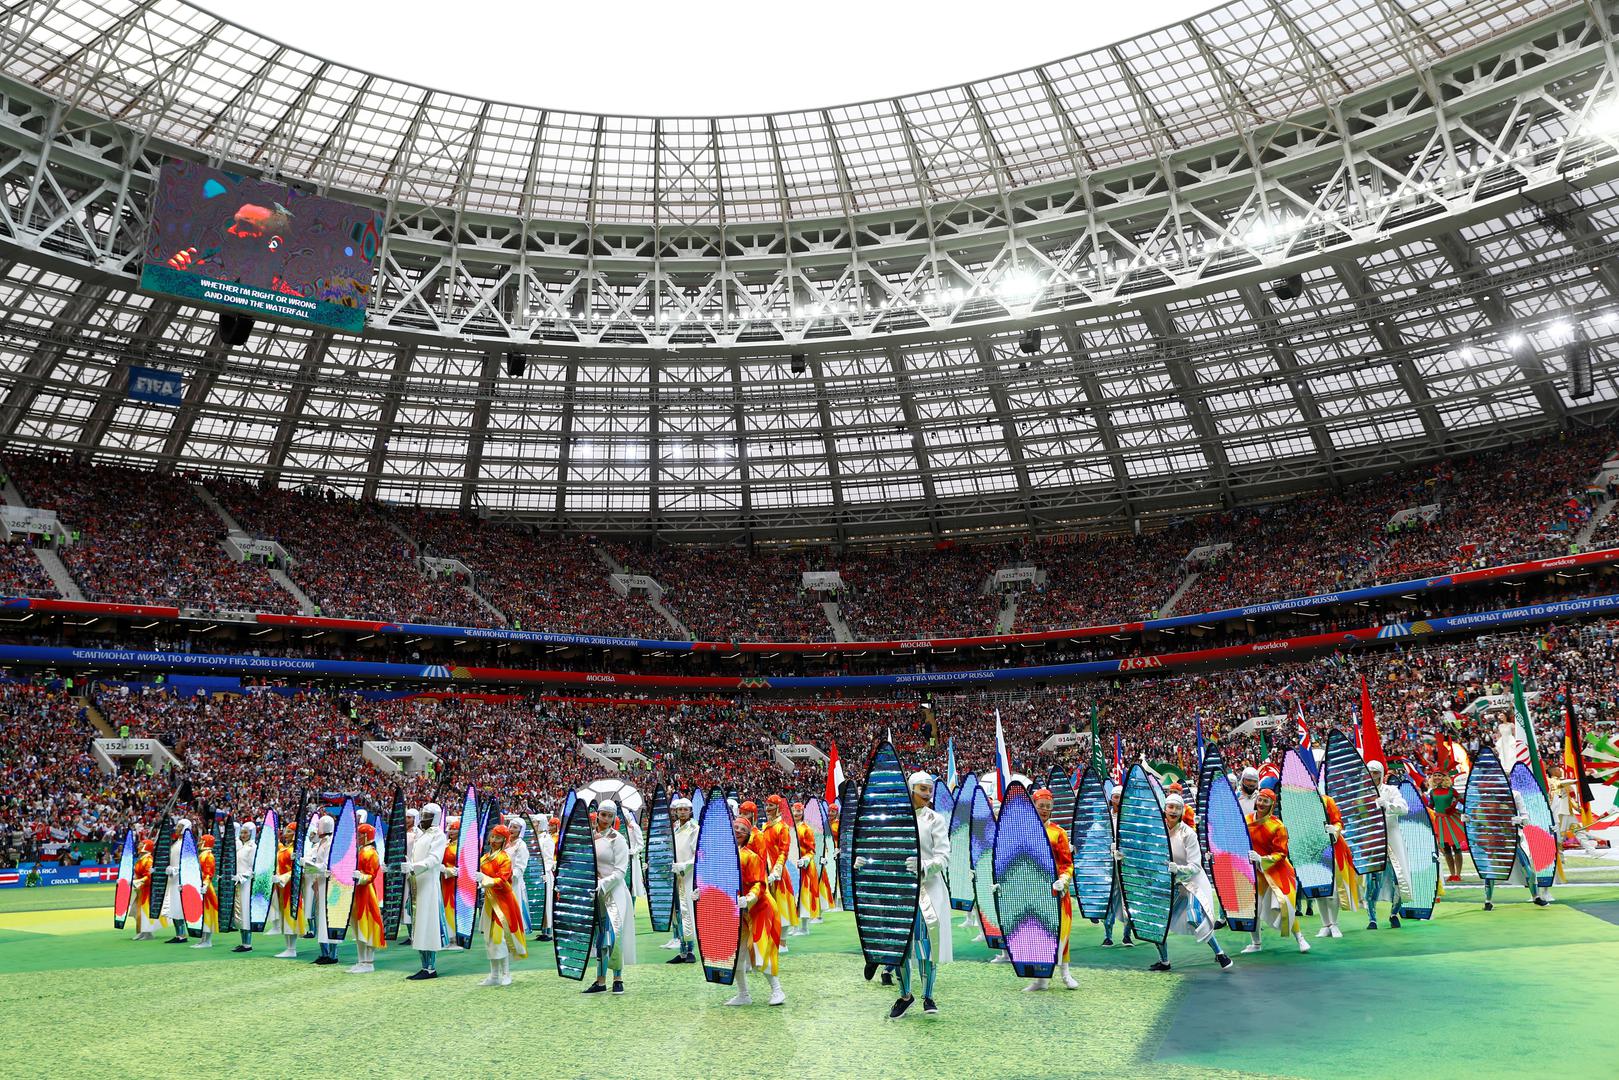 Domaćini Rusi napravili su spektakularno otvaranje na stadionu Lužnikiju uoči utakmice protiv Saudijske Arabije.

